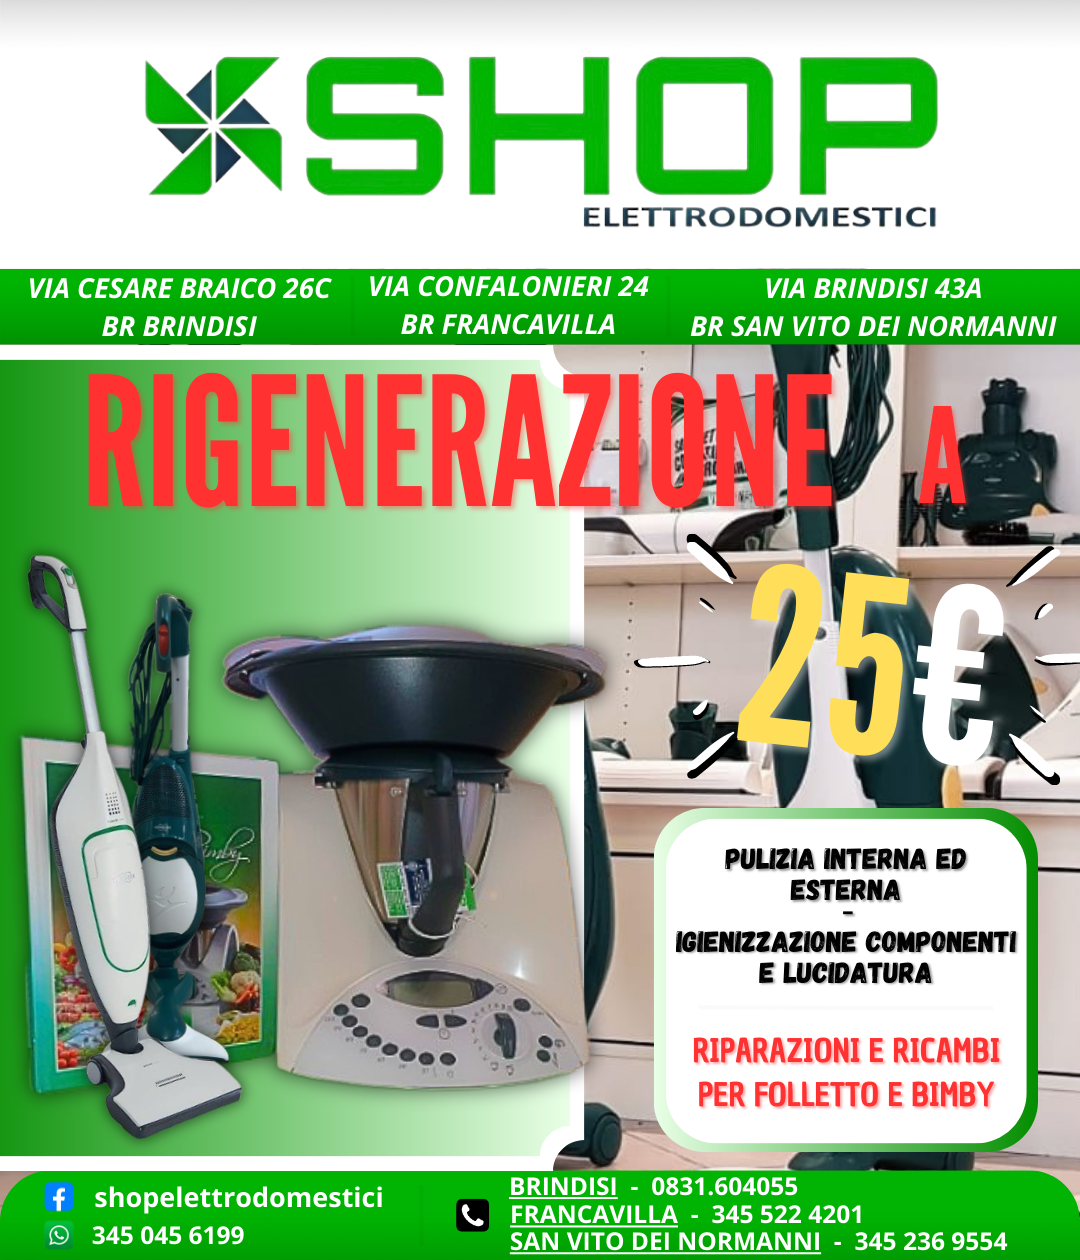 SHOP Elettrodomestici - Rigenerazione 25€ - Pulizia Interna Esterna